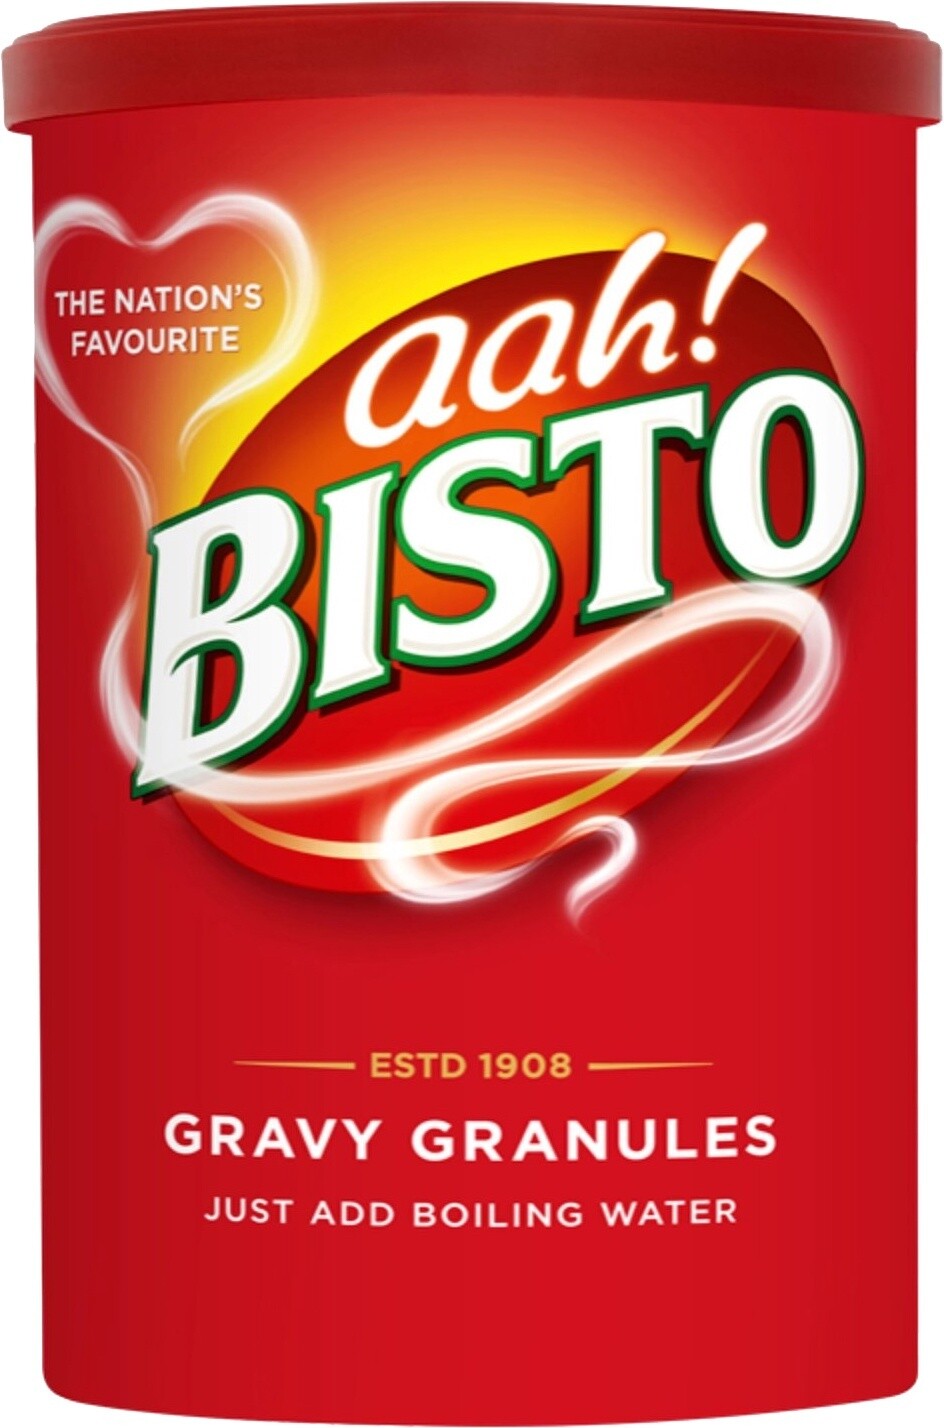 Bisto Gravy Granules, Flavour: Beef (red)